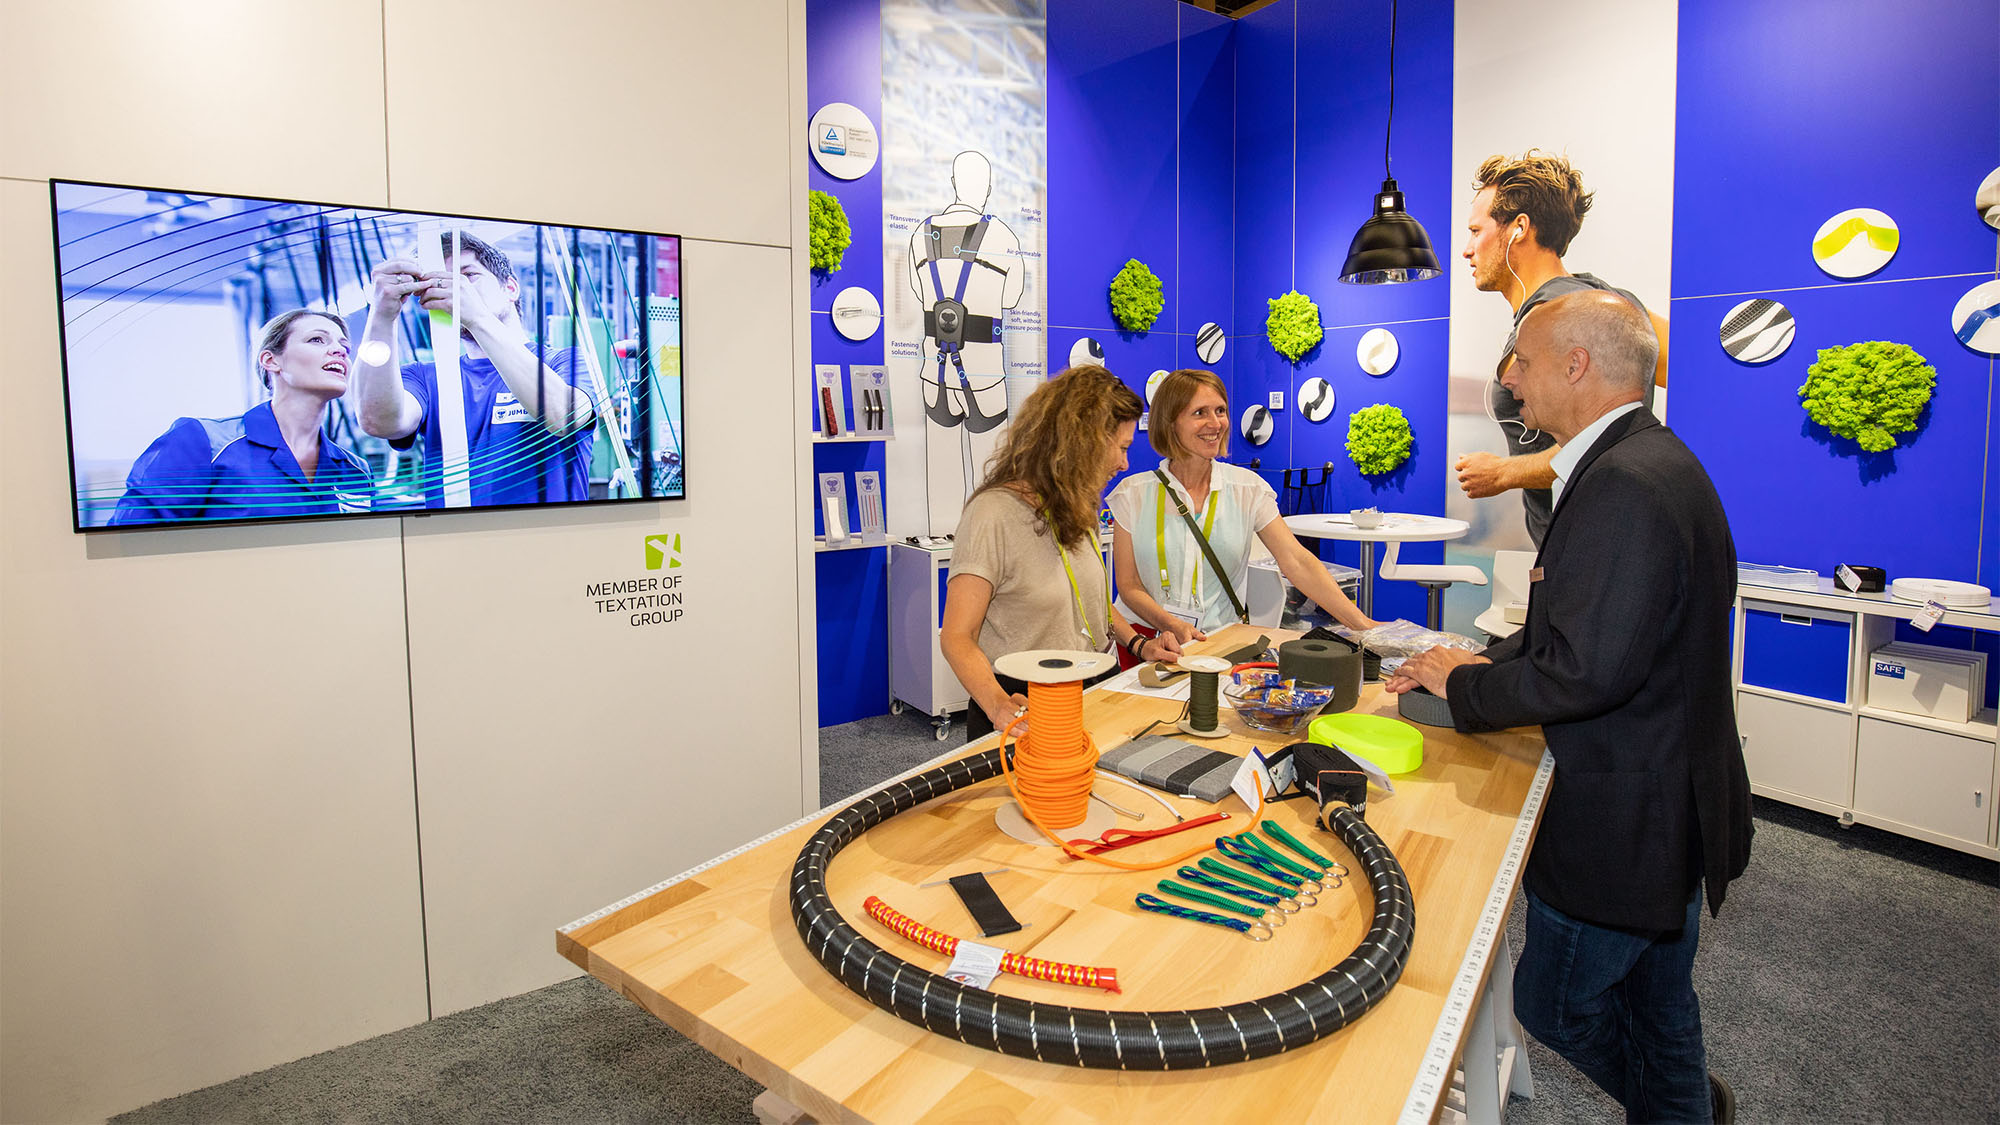 JUMBO-Textil-Innovationen auf der techtextil 2022: Ein Mitarbeiter von JUMBO-Textil berät zwei Frauen an einem Tisch mit verschiedenen Produktbeispielen. Links ist ein Bildschirm, auf dem gerade zwei weitere Mitarbeiter zu sehen sind (Standbild aus dem Imagevideo).